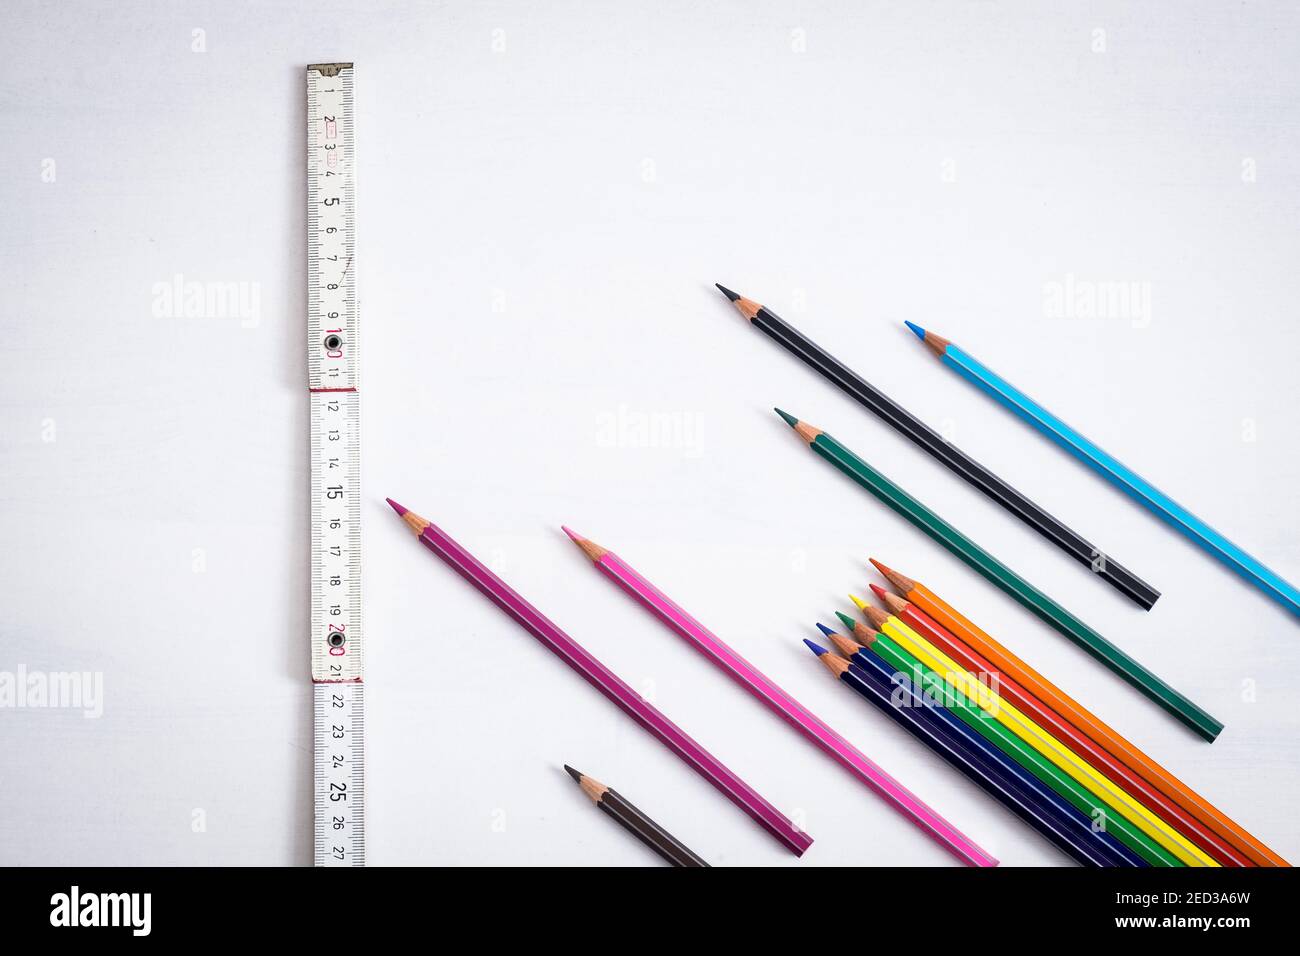 Viele farbige Buntstifte, die wie Pfeile auf einem weißen Hintergrund platziert sind, zeigt ein in der Nähe befindeglich Holzmesser den sicheren Abstand an, den man in den Klassenzimmern halten muss, um dies zu verhindern Stockfoto